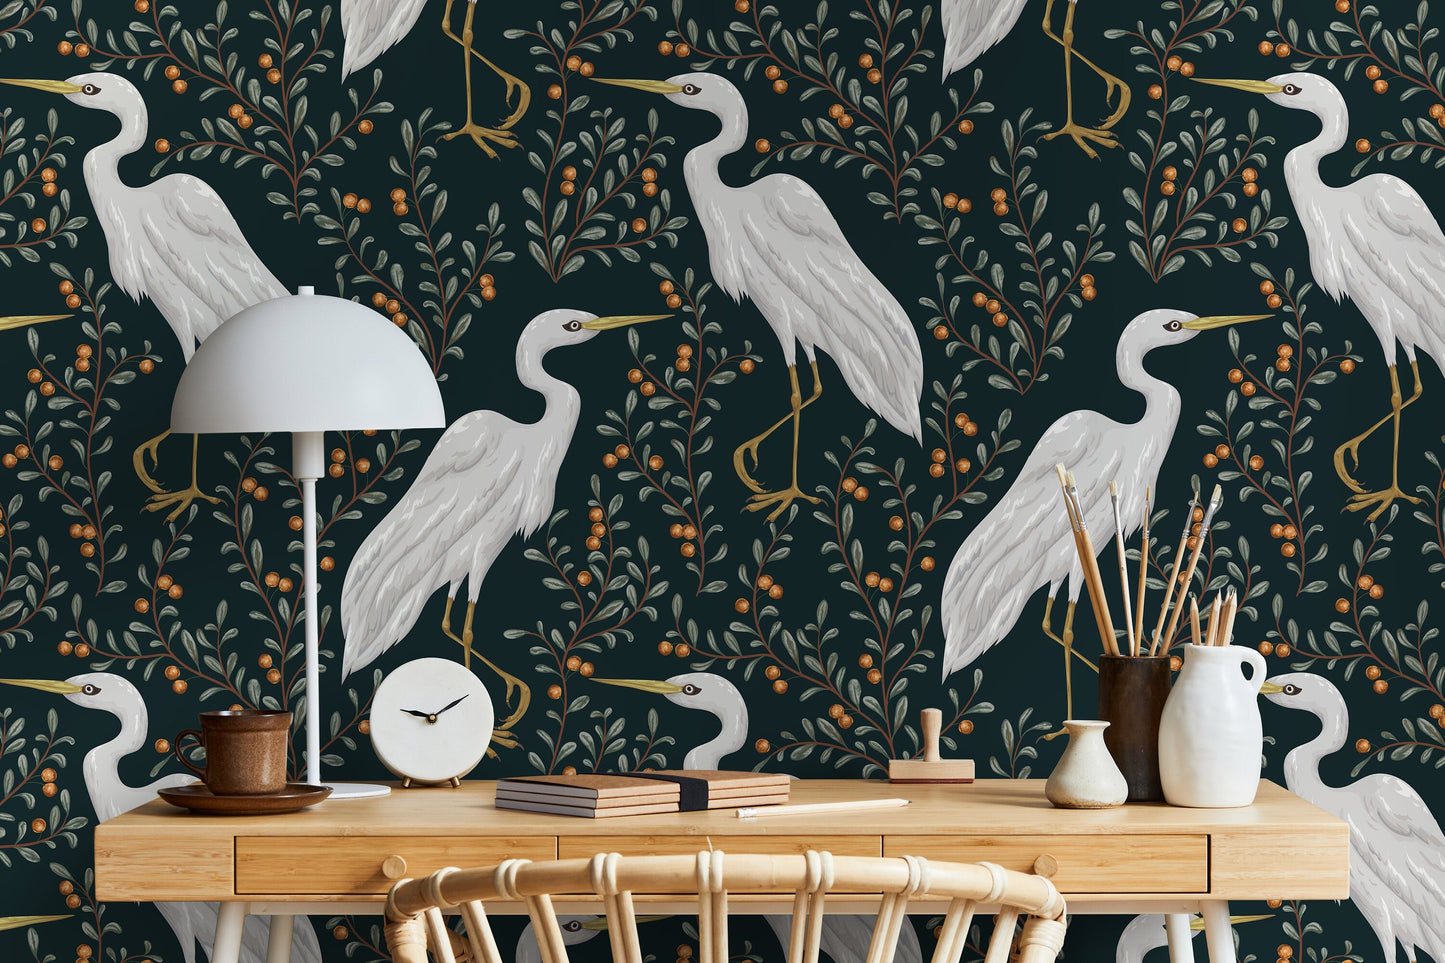 Floral Cranes Birds Wallpaper / Peel and Stick Wallpaper Removable Wallpaper Home Decor Wall Art Wall Decor Room Decor - D072